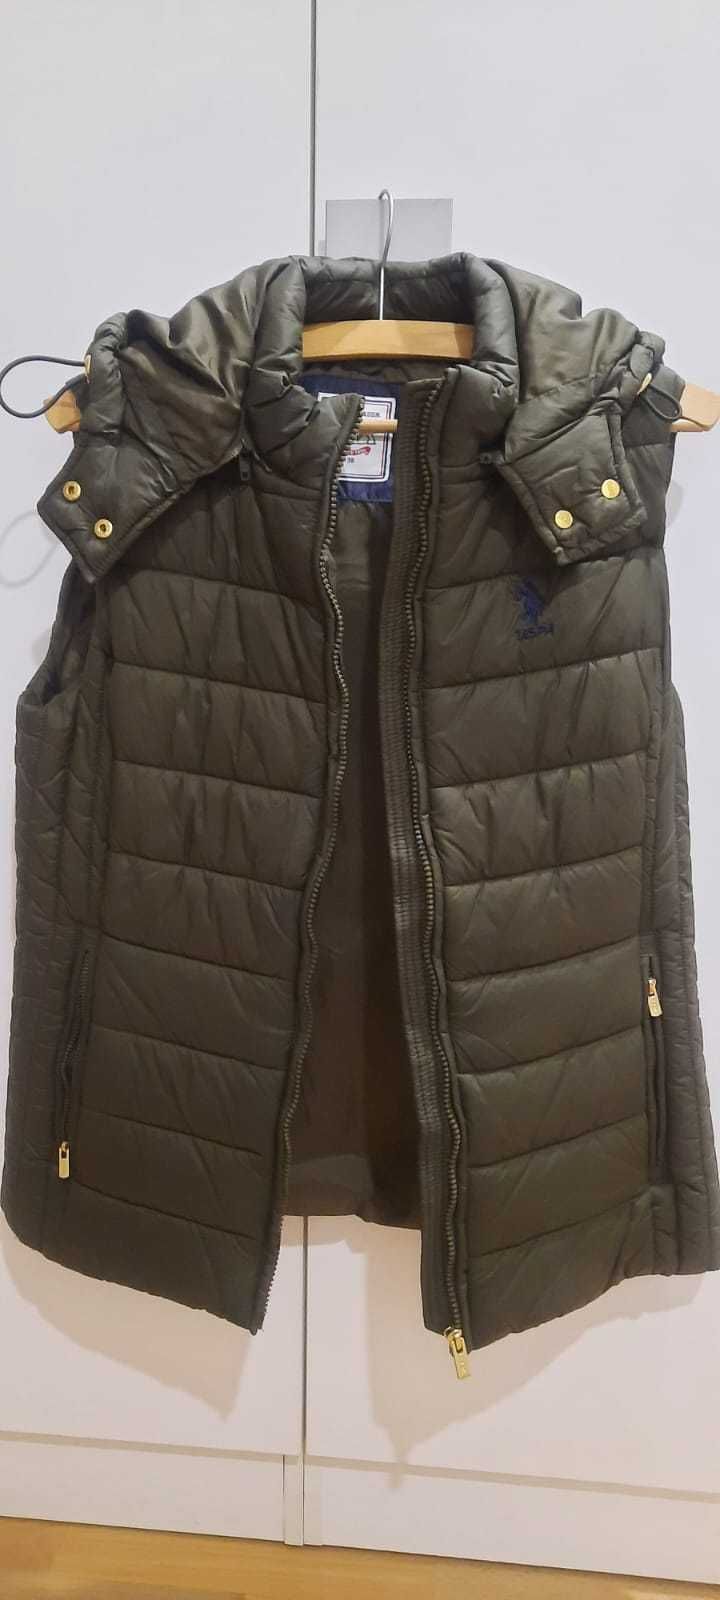 Куртка-жилет без рукавов с капюшоном (US Polo Assn.)